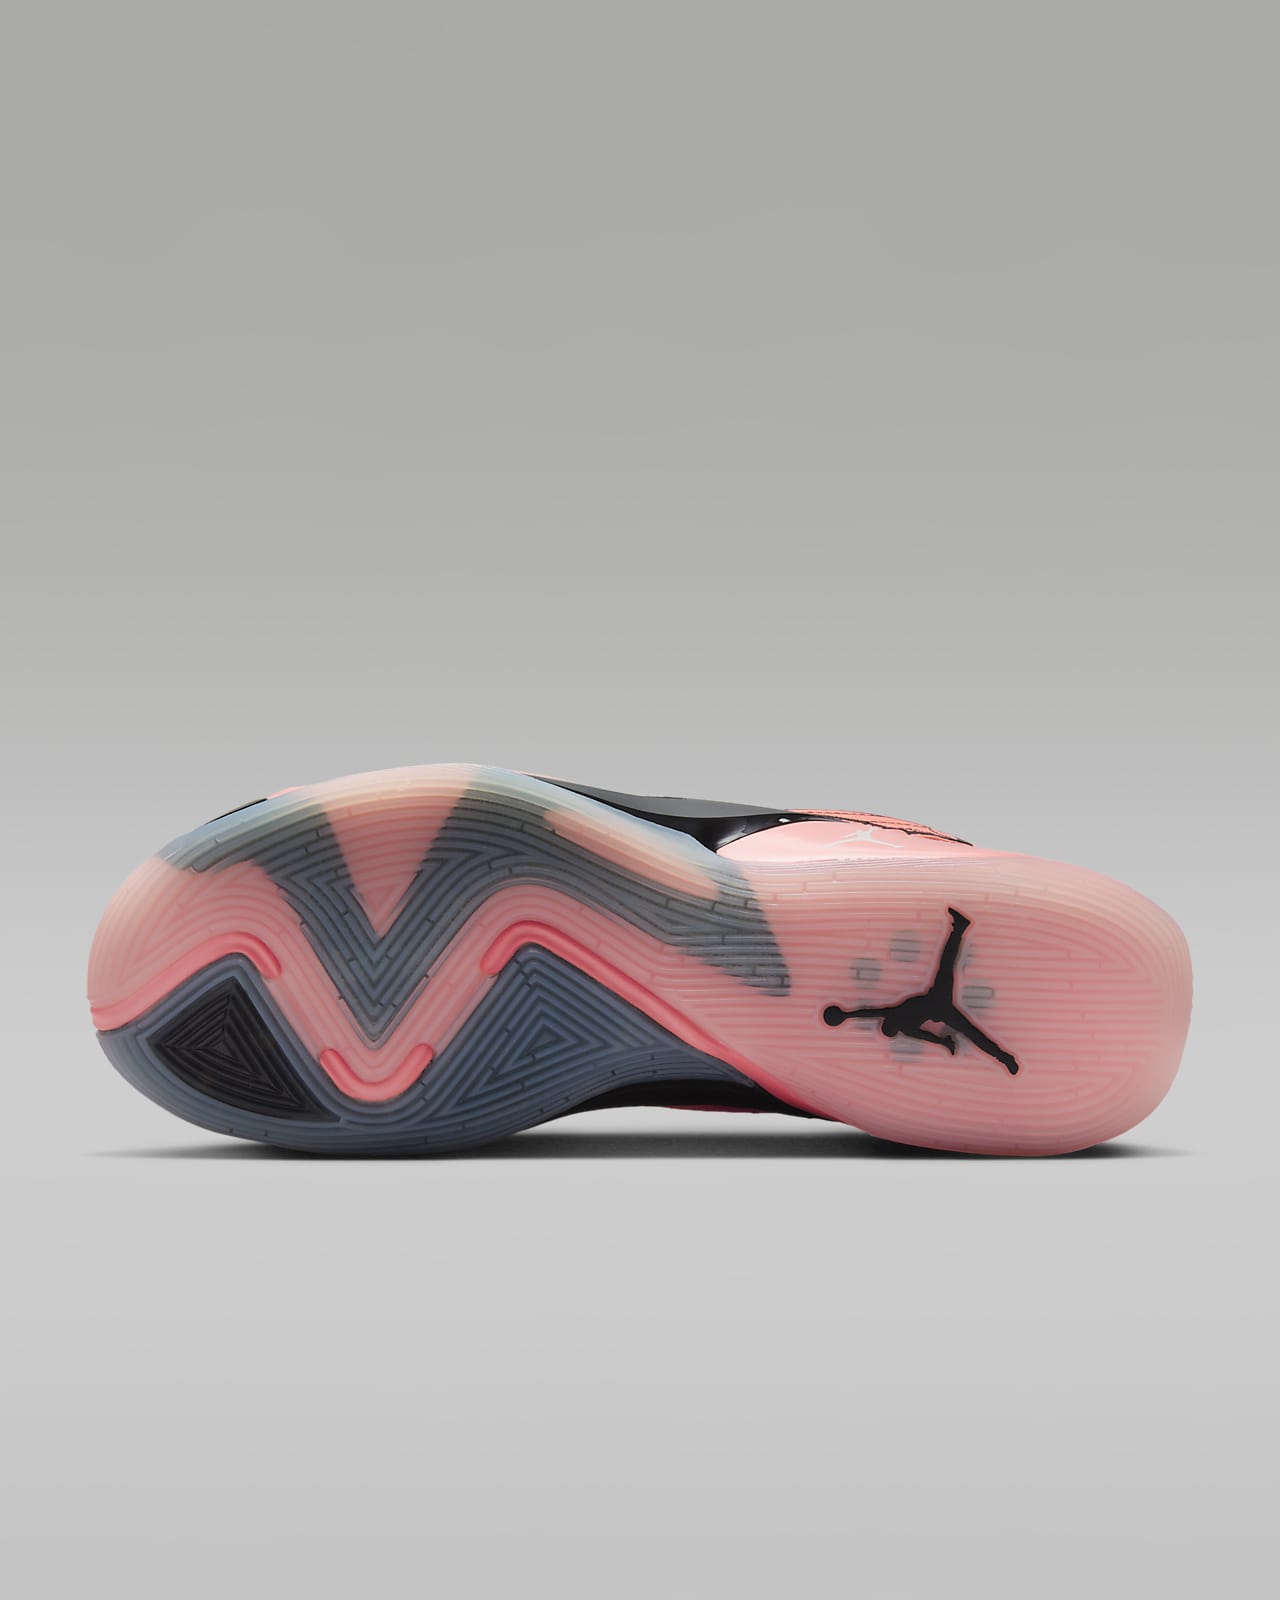 Luka 2 Basketball Shoes. Nike.com